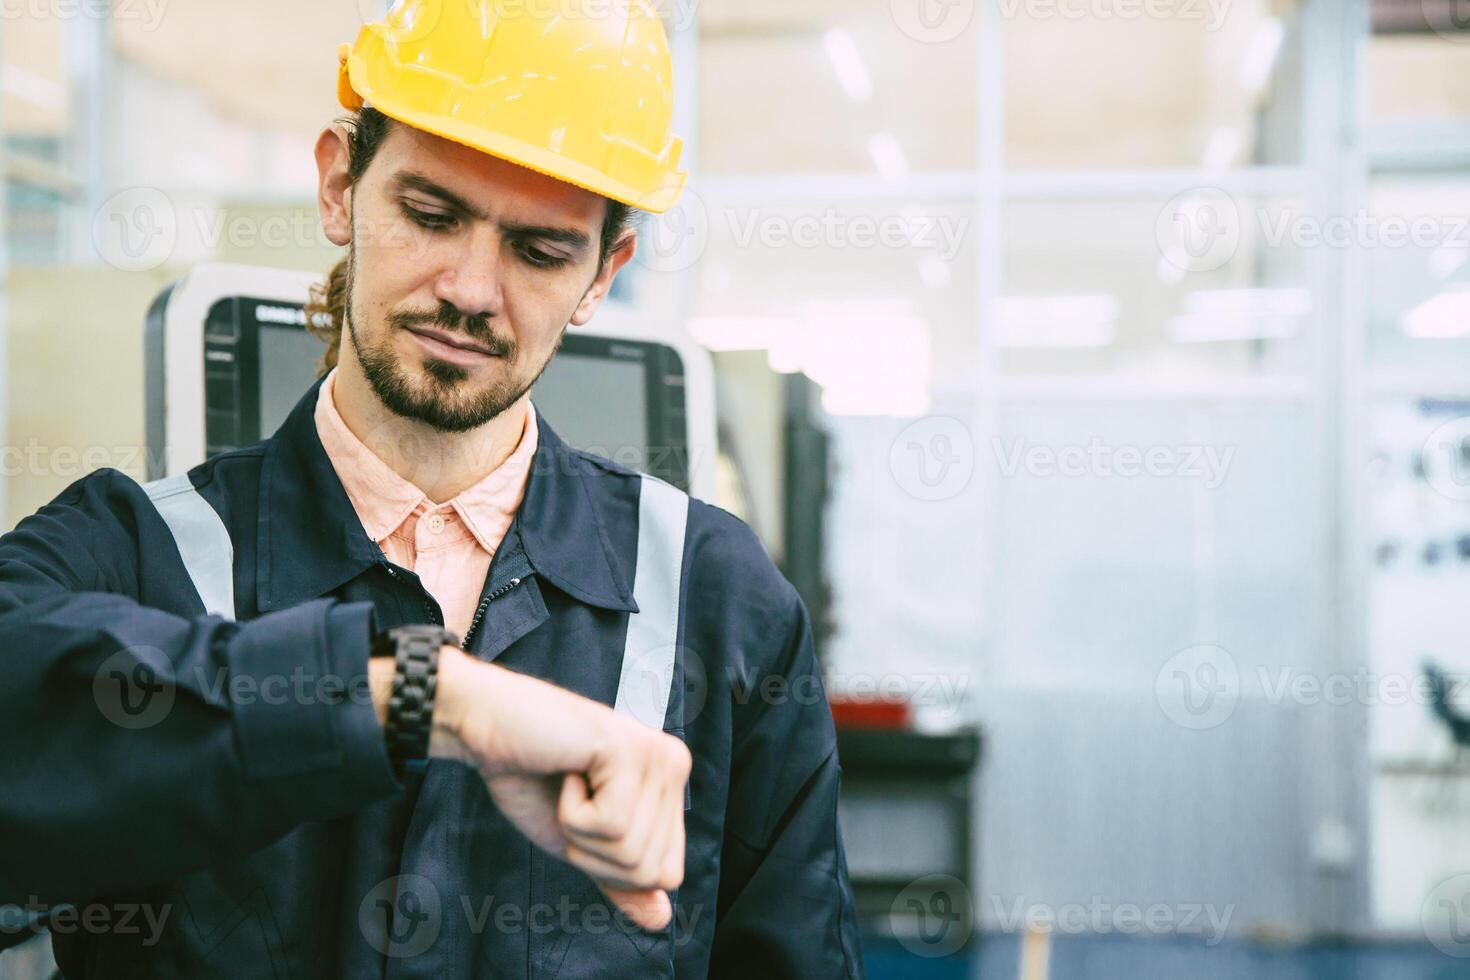 ingénieur ouvrier à la recherche à montre-bracelet. industrie usine travail heures après midi Pause fois pour le déjeuner photo